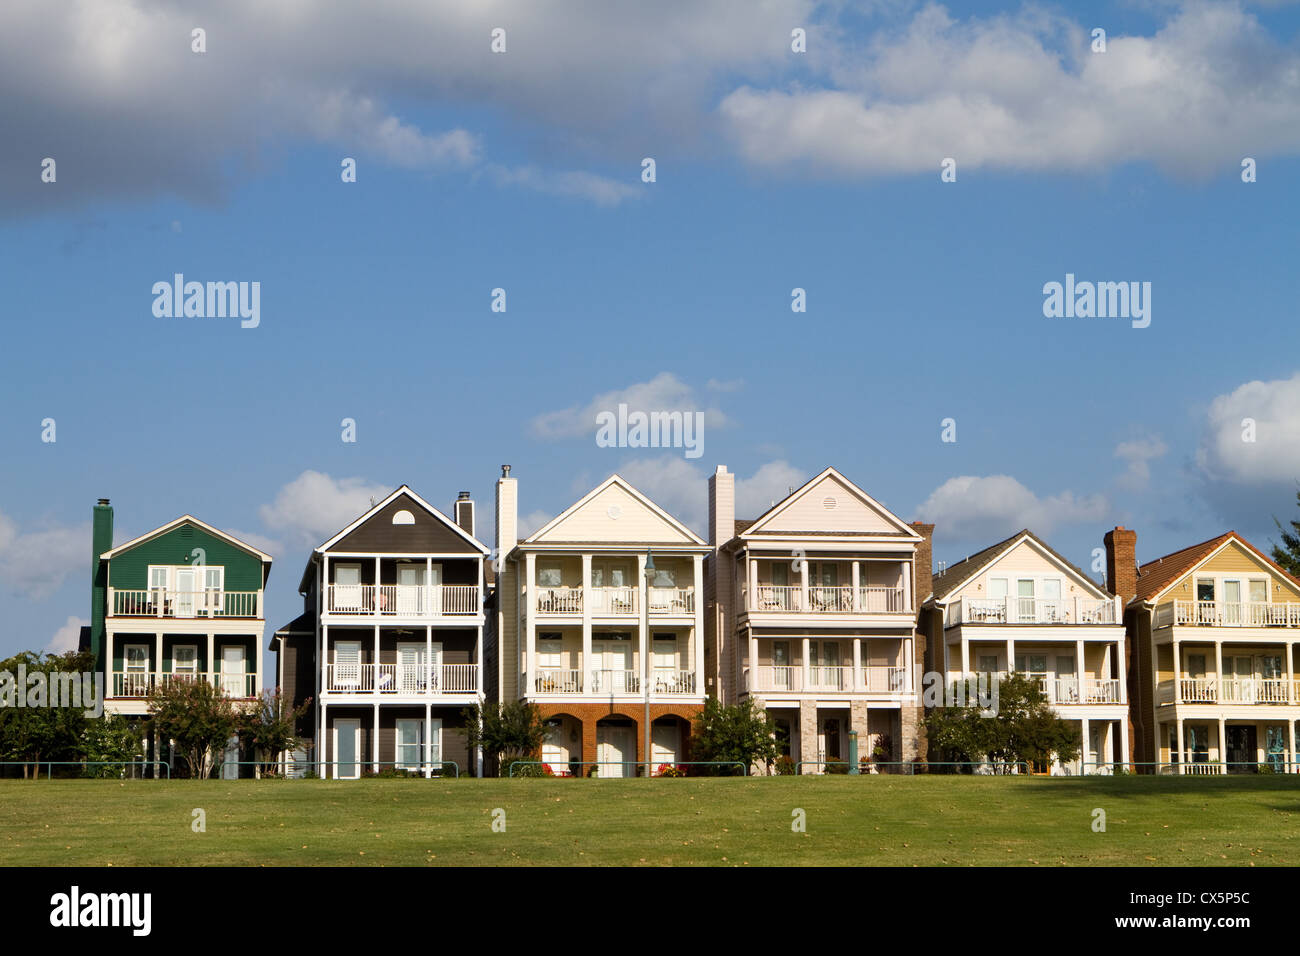 Townhomes Exclusiva para los ricos, construido sobre una colina de hierba en una fila contra un nublado cielo azul en Memphis, Tennessee. Foto de stock